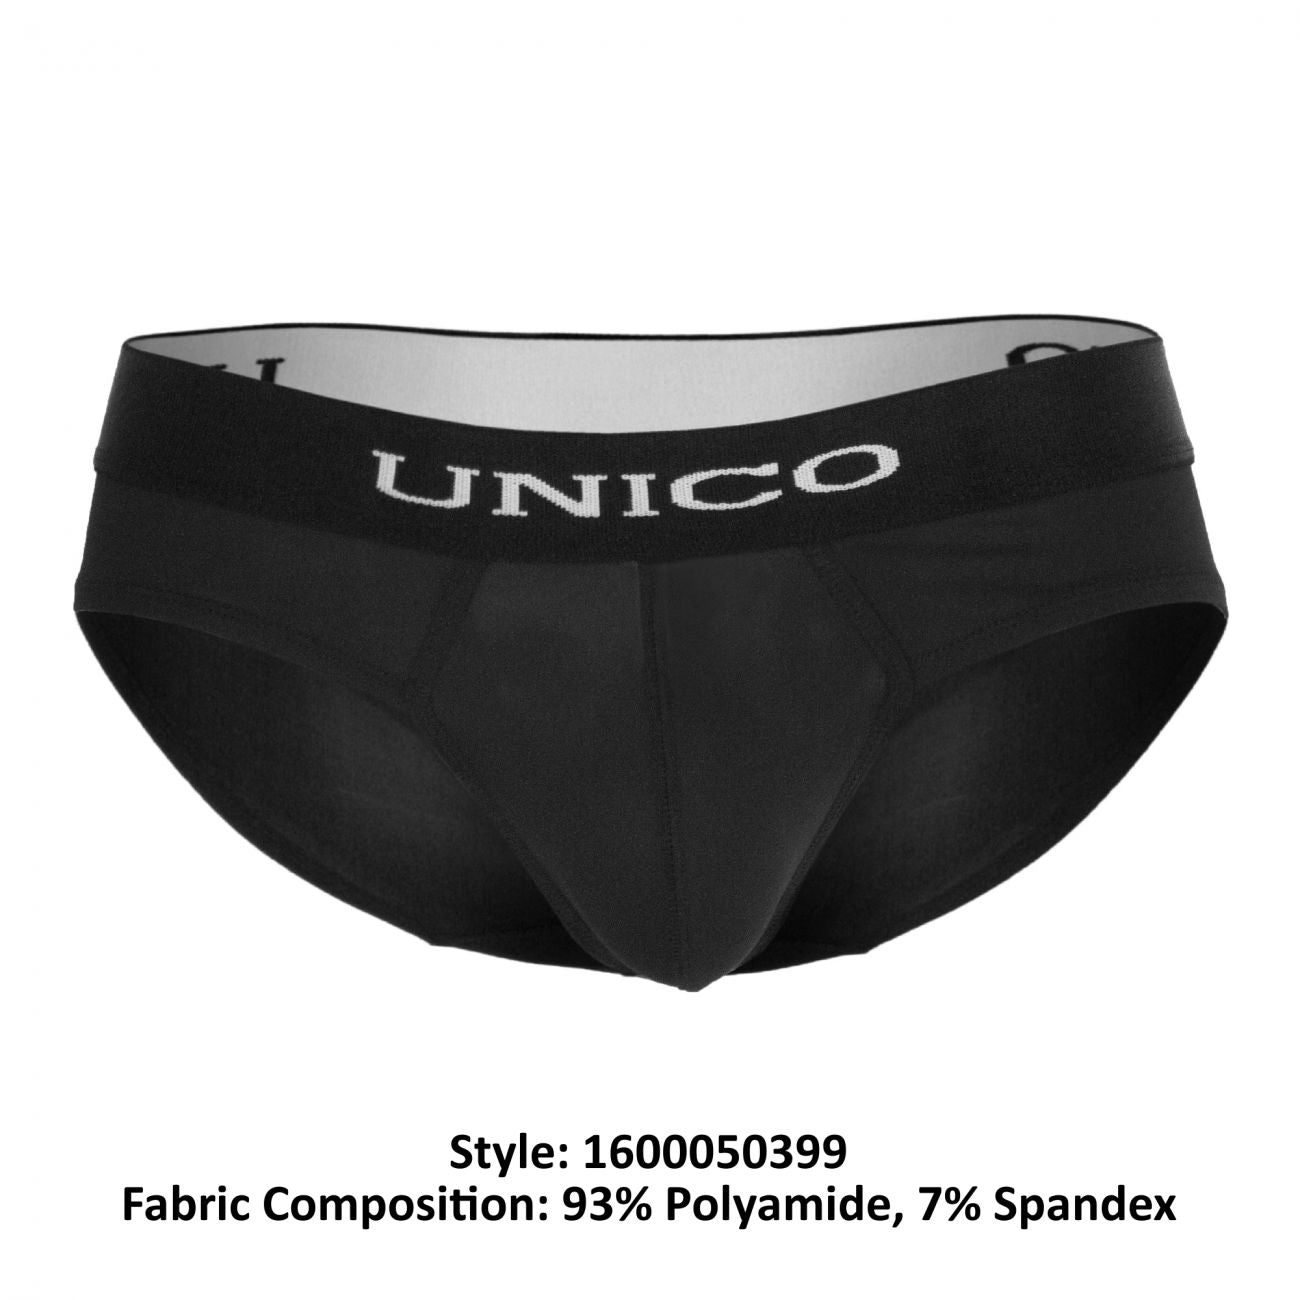 Unico 1600050399 Briefs Intenso Black